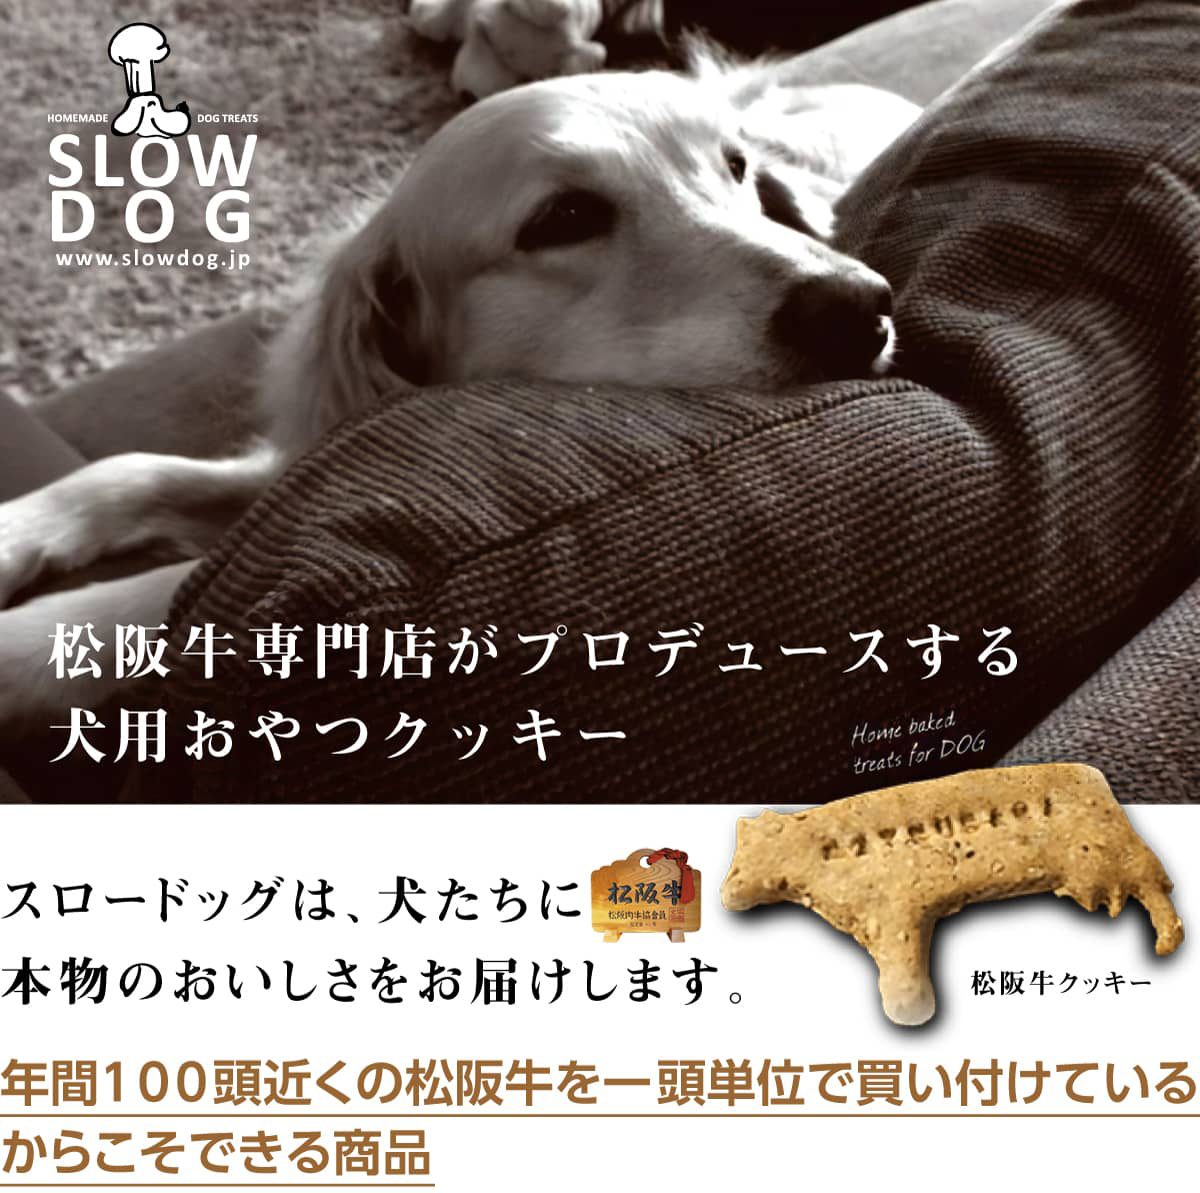 松阪牛専門店がプロデュースする犬用おやつクッキー。スロードッグは、犬たちに本物のおいしさをお届けします。年間100頭近くの松阪牛を一頭単位で買い付けているからこそできる商品。※写真は松阪牛クッキー